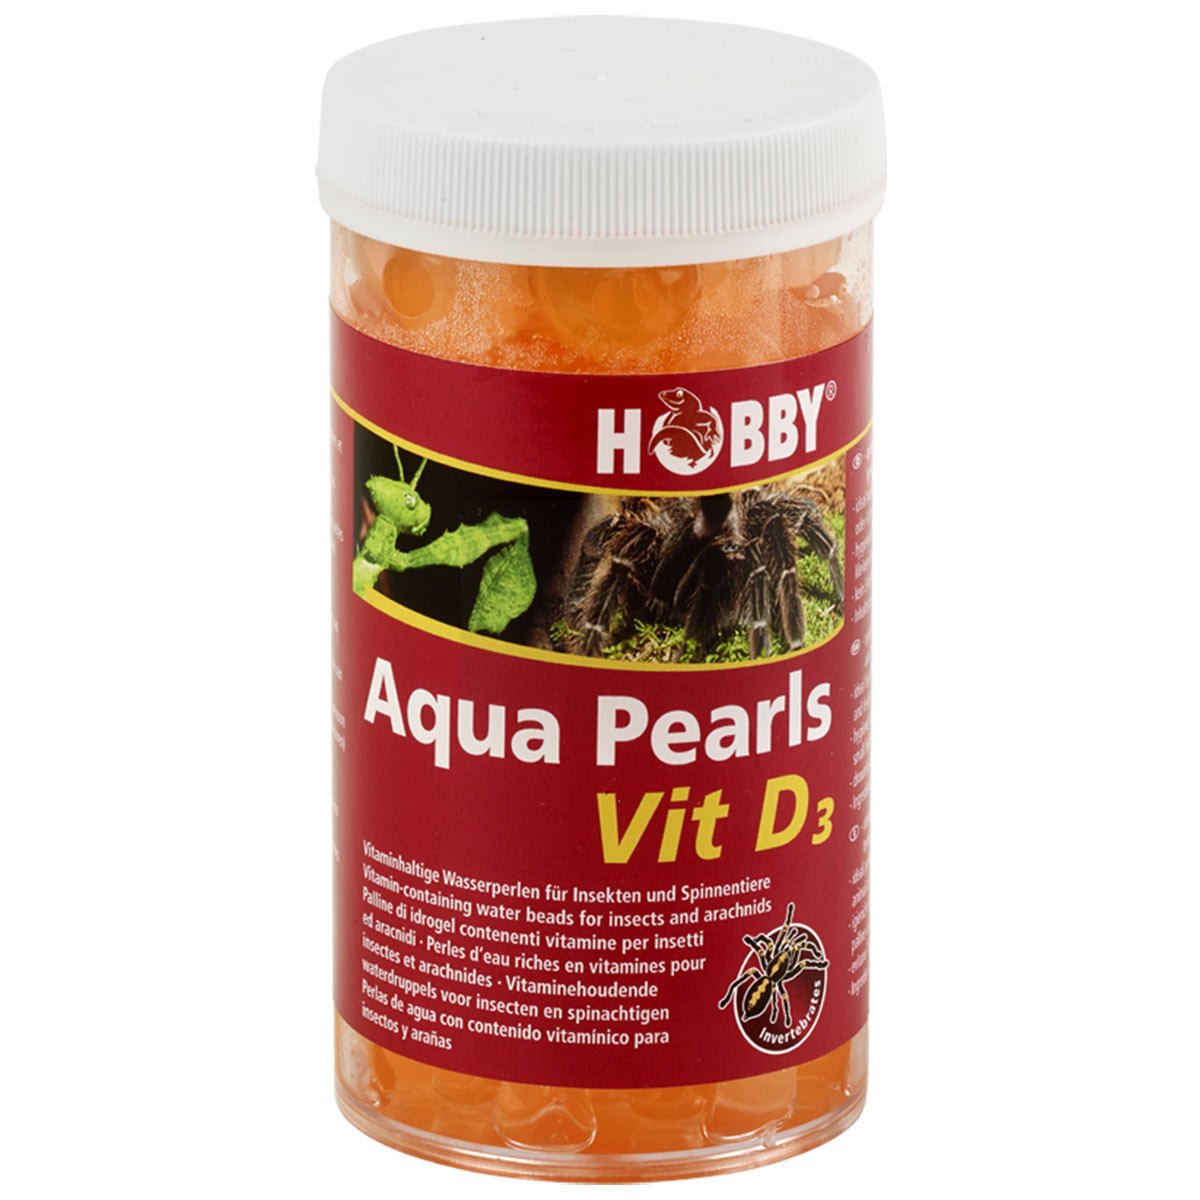 Hobby Aqua Pearls Vit D3 170 g